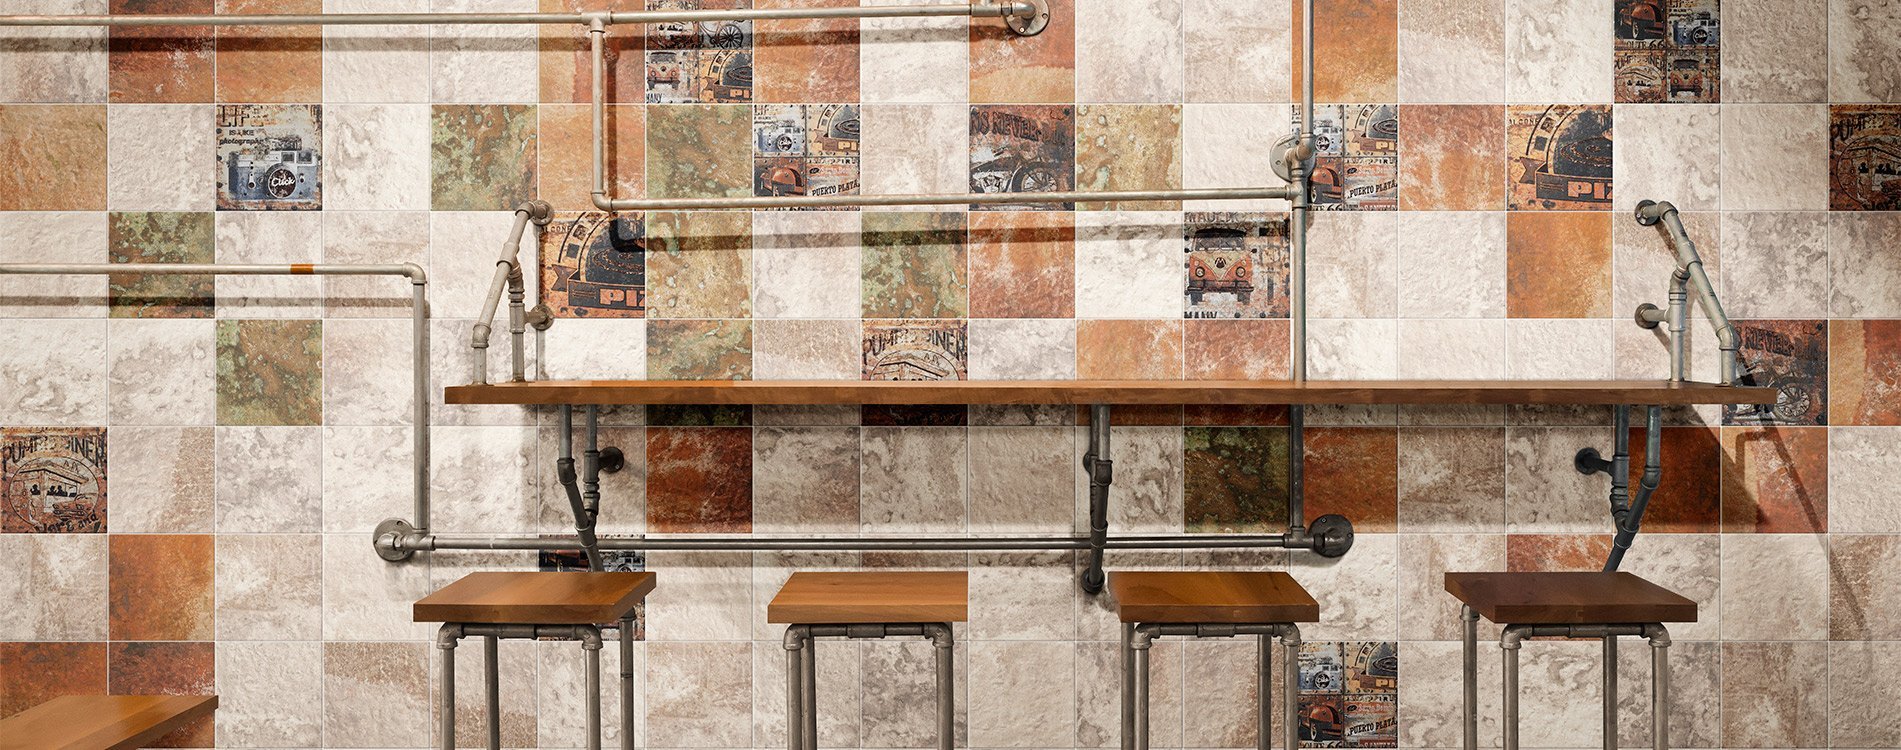 Плитка Mainzu Titanium, Mainzu, галерея фото в интерьерах